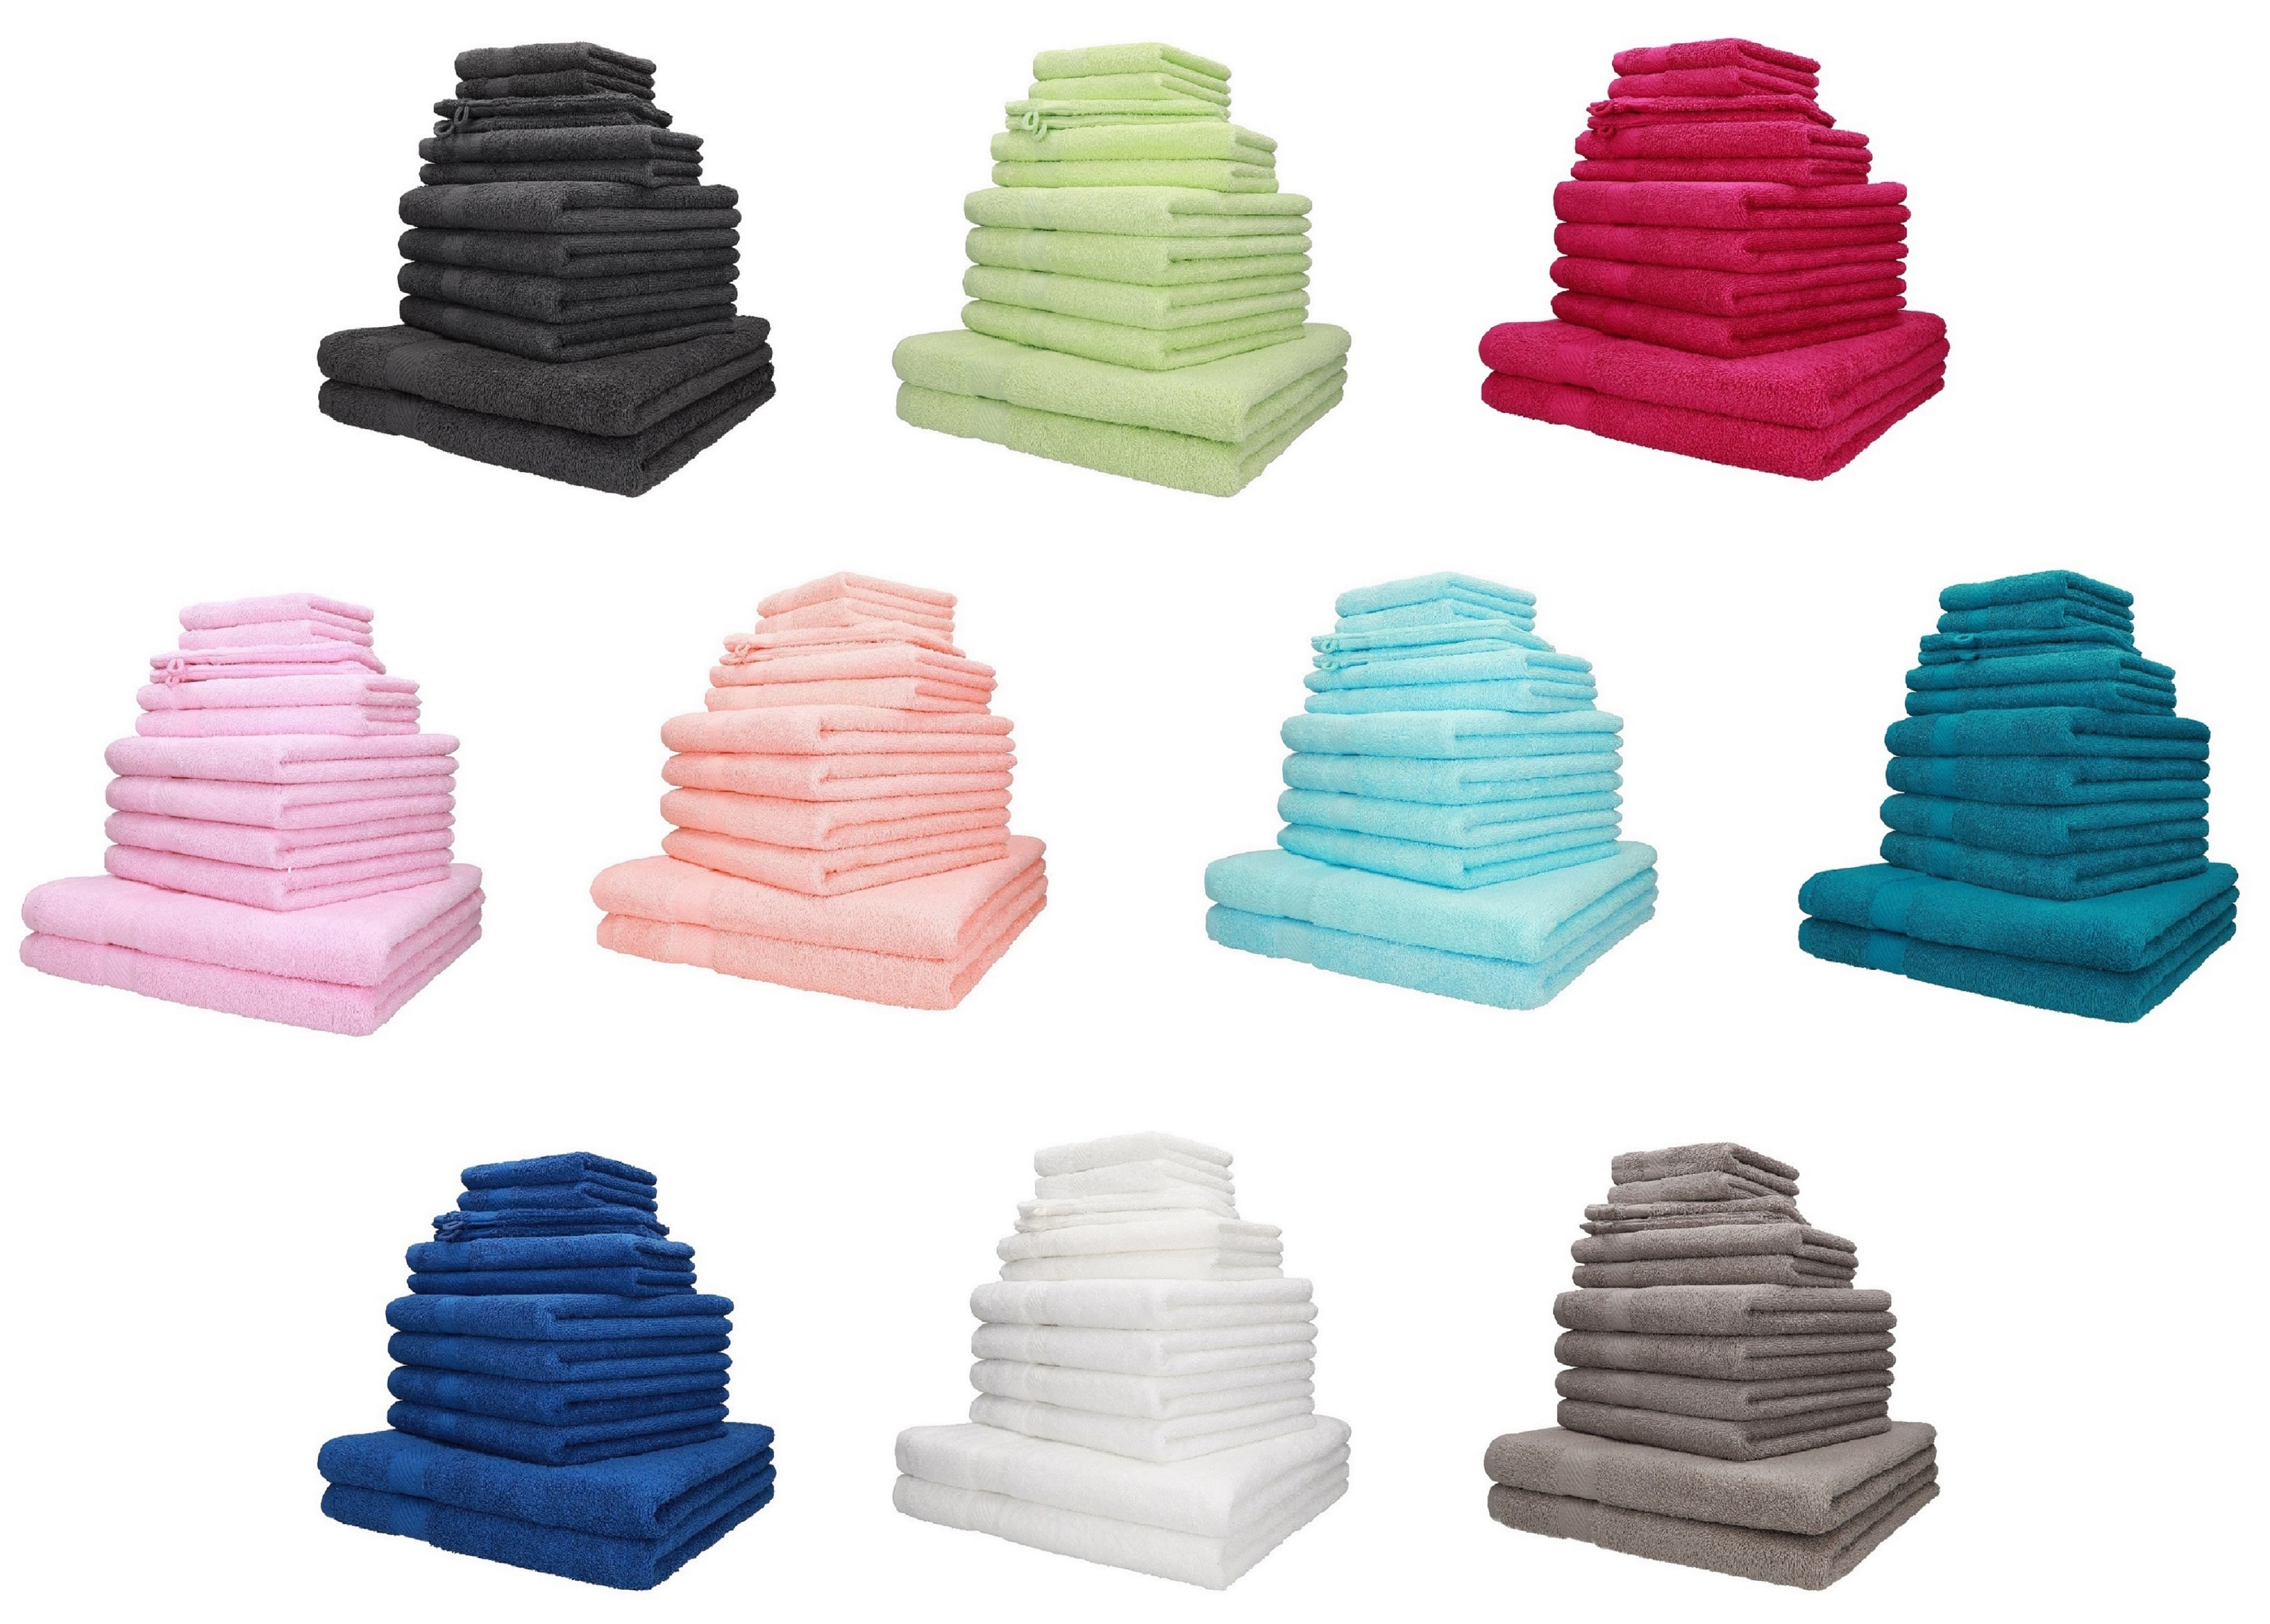 Betz 12-TLG Handtuch Set Premium 100% Baumwolle 2 Duschtücher 4 Handtücher 2 Gästetücher 2 Seiftücher 2 Waschhandschuhe Farbe Graphit grau/Ocean